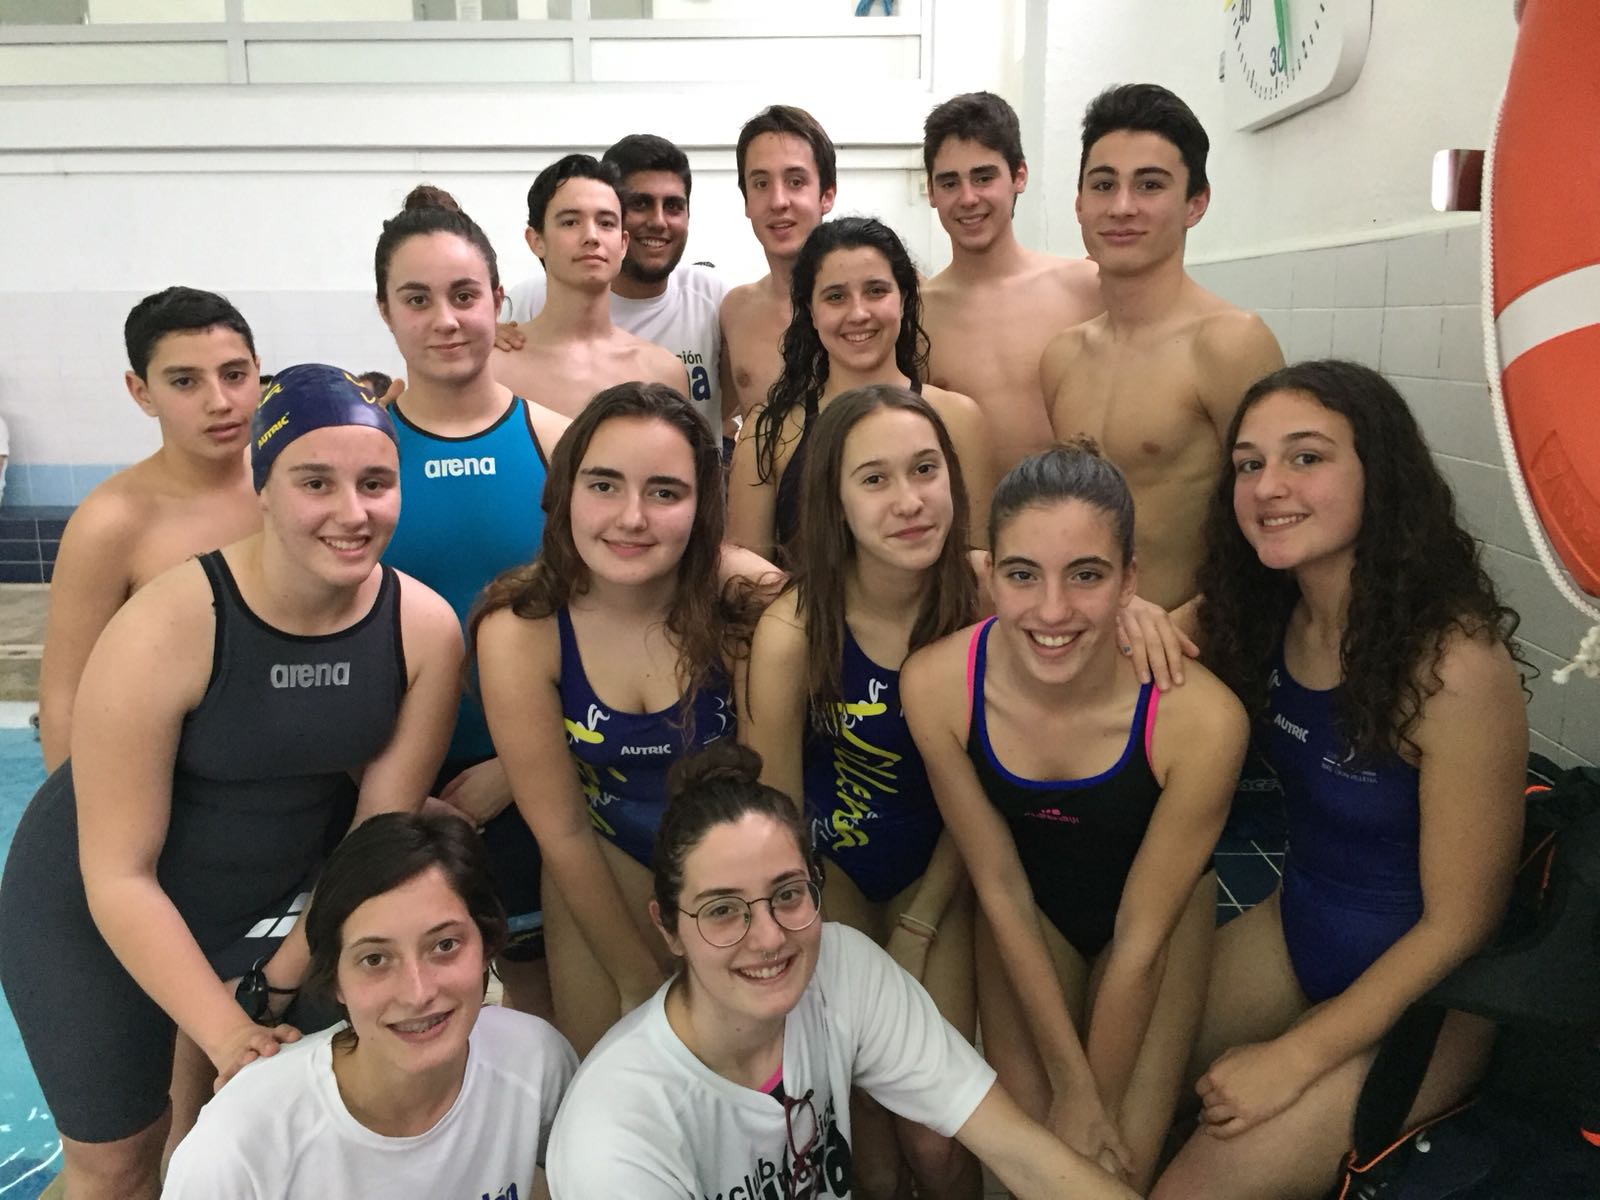 Irene Díaz y Laura Esteban consiguen mínima para el campeonato Autonómico de natación